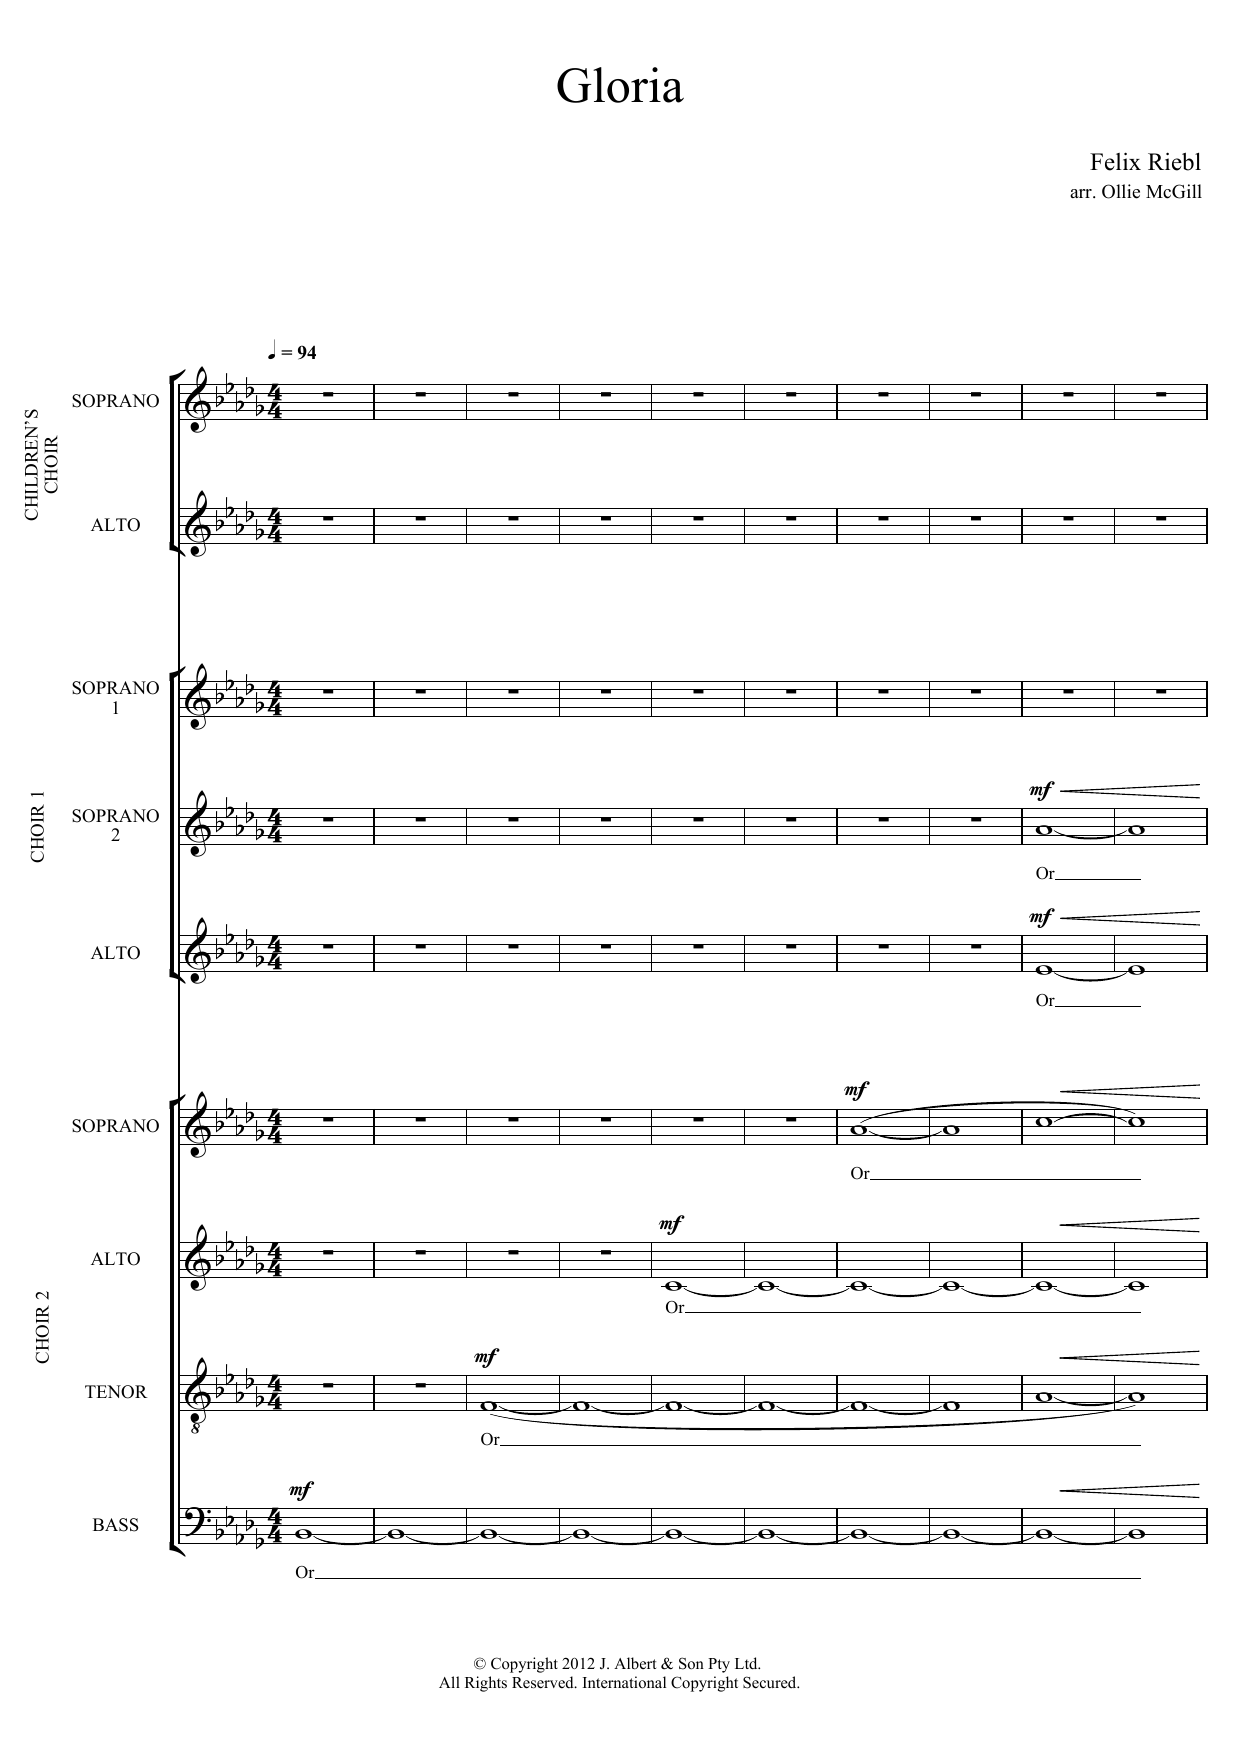 Felix Riebl Gloria (arr. Ollie McGill) Sheet Music Notes & Chords for SATB Choir - Download or Print PDF